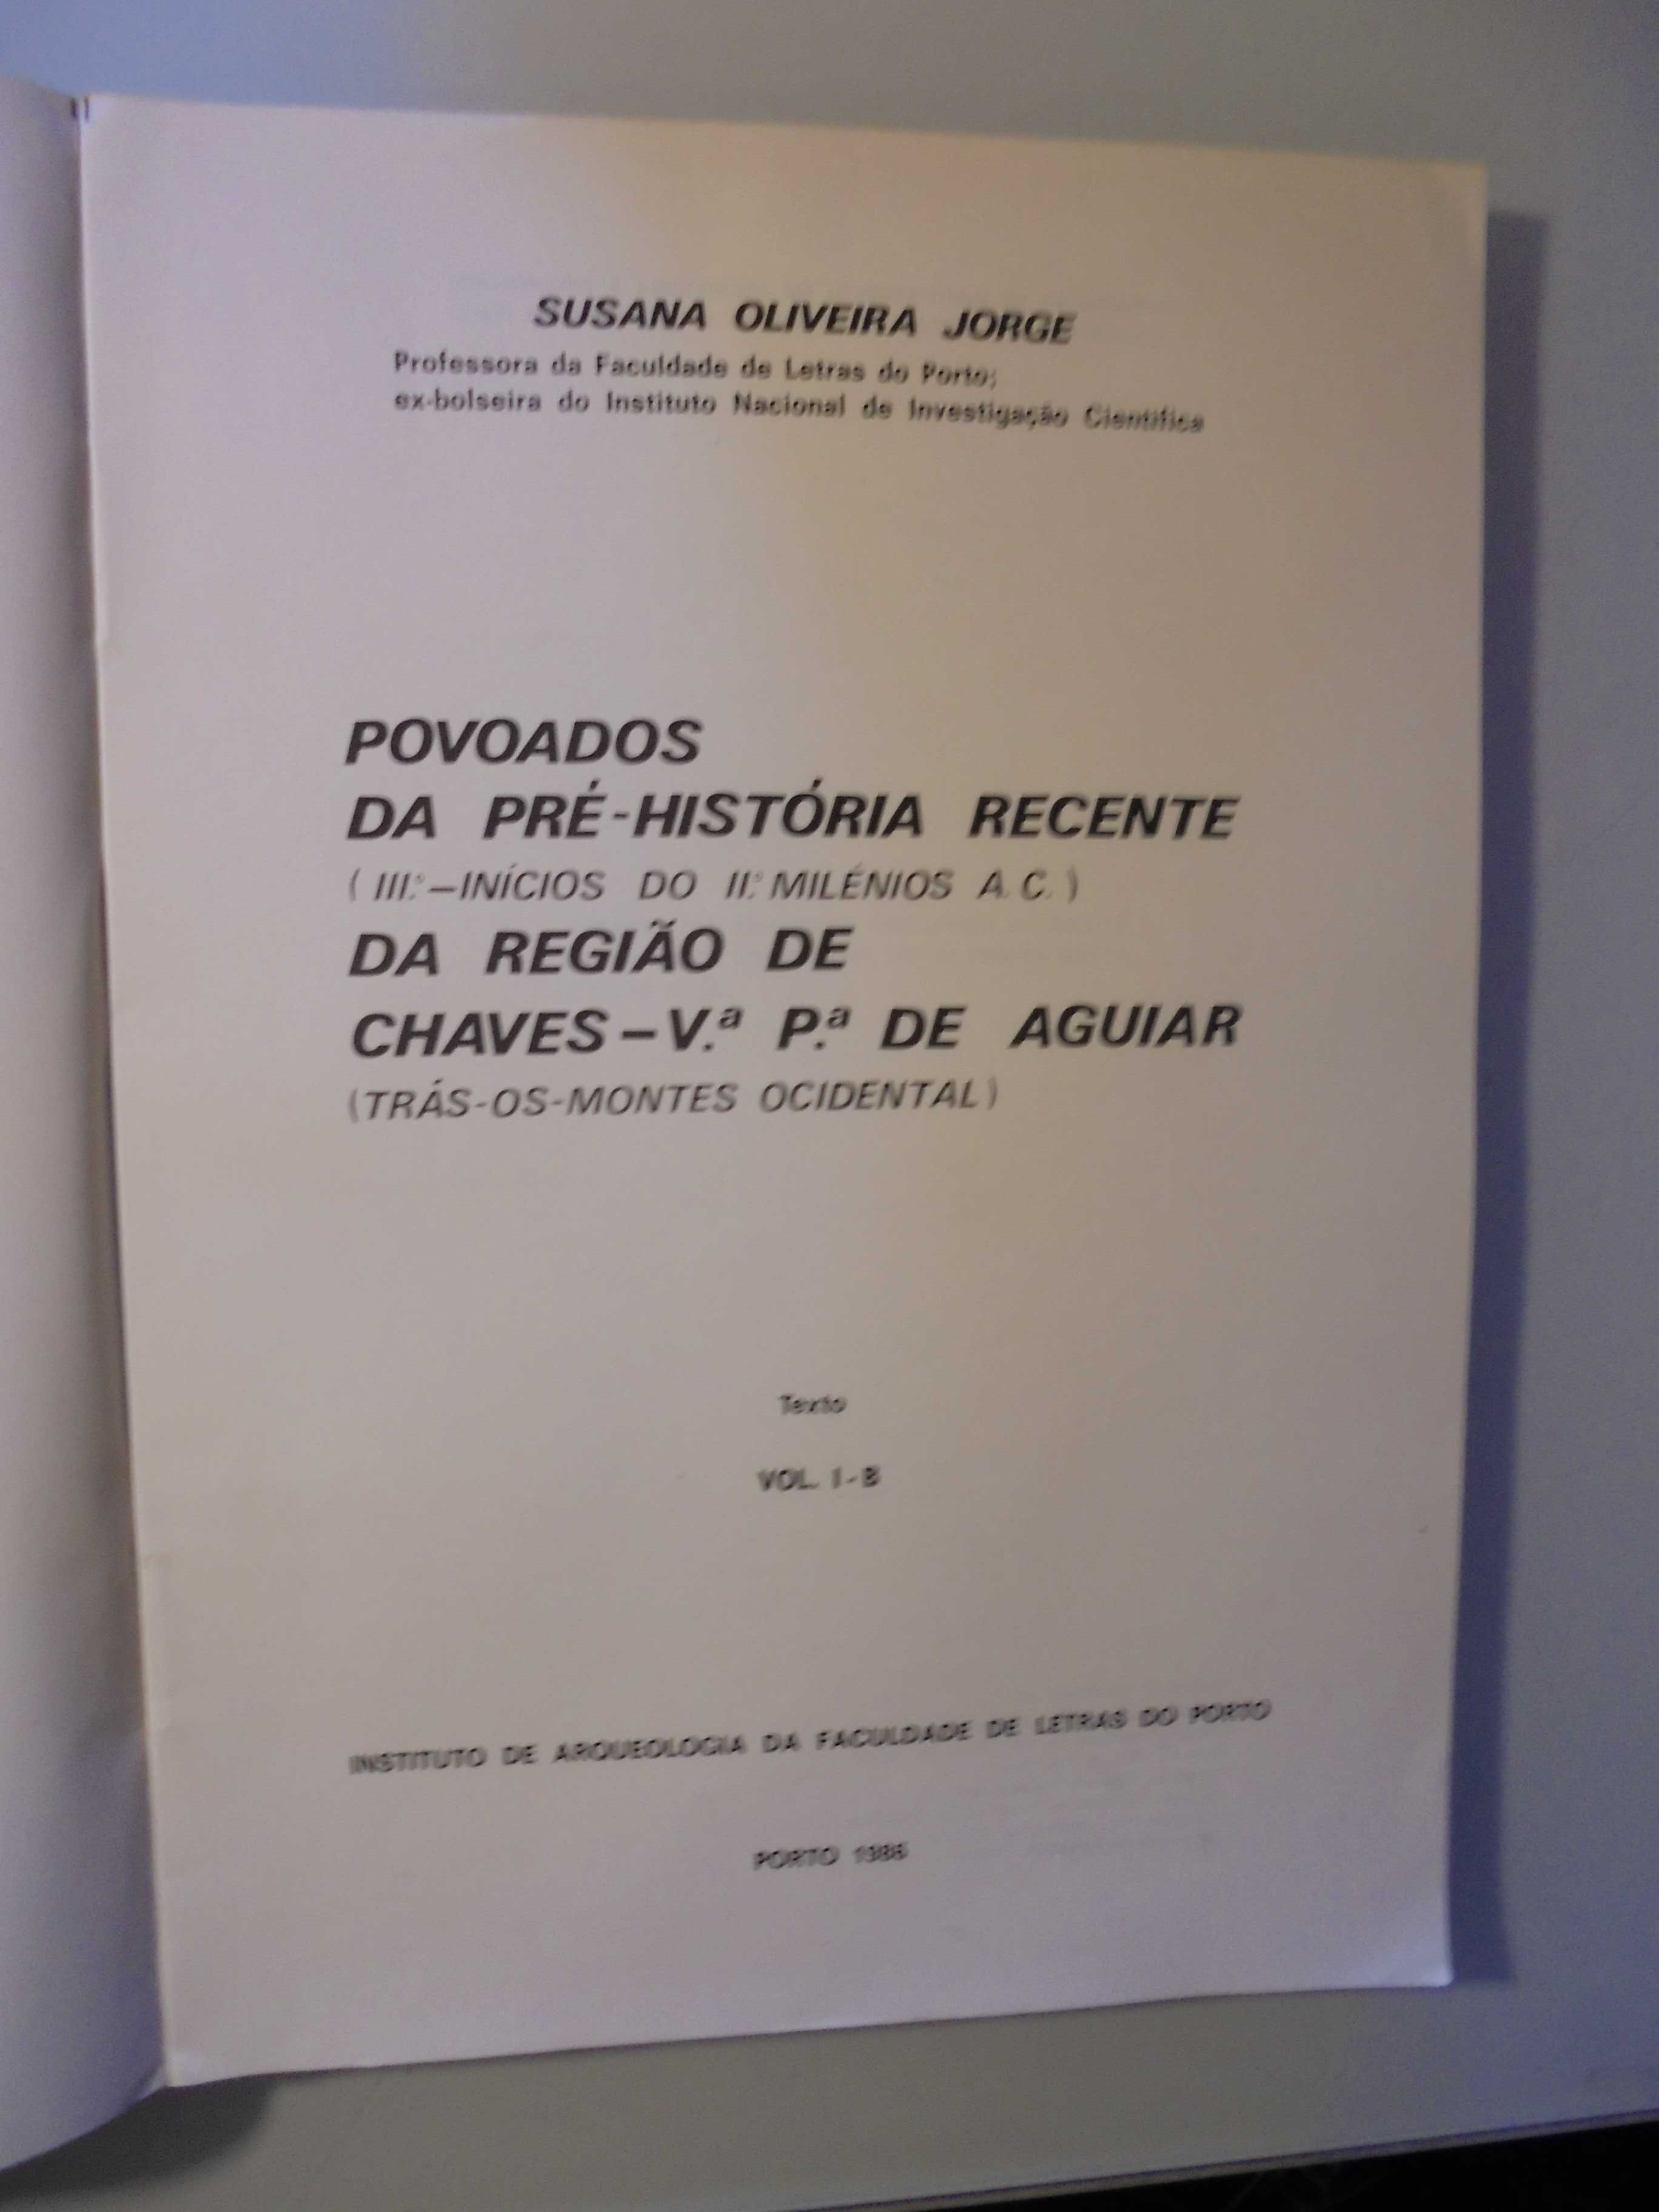 Jorge (Susana Oliveira);Povoados de Chaves-Vila Pouca de Aguiar